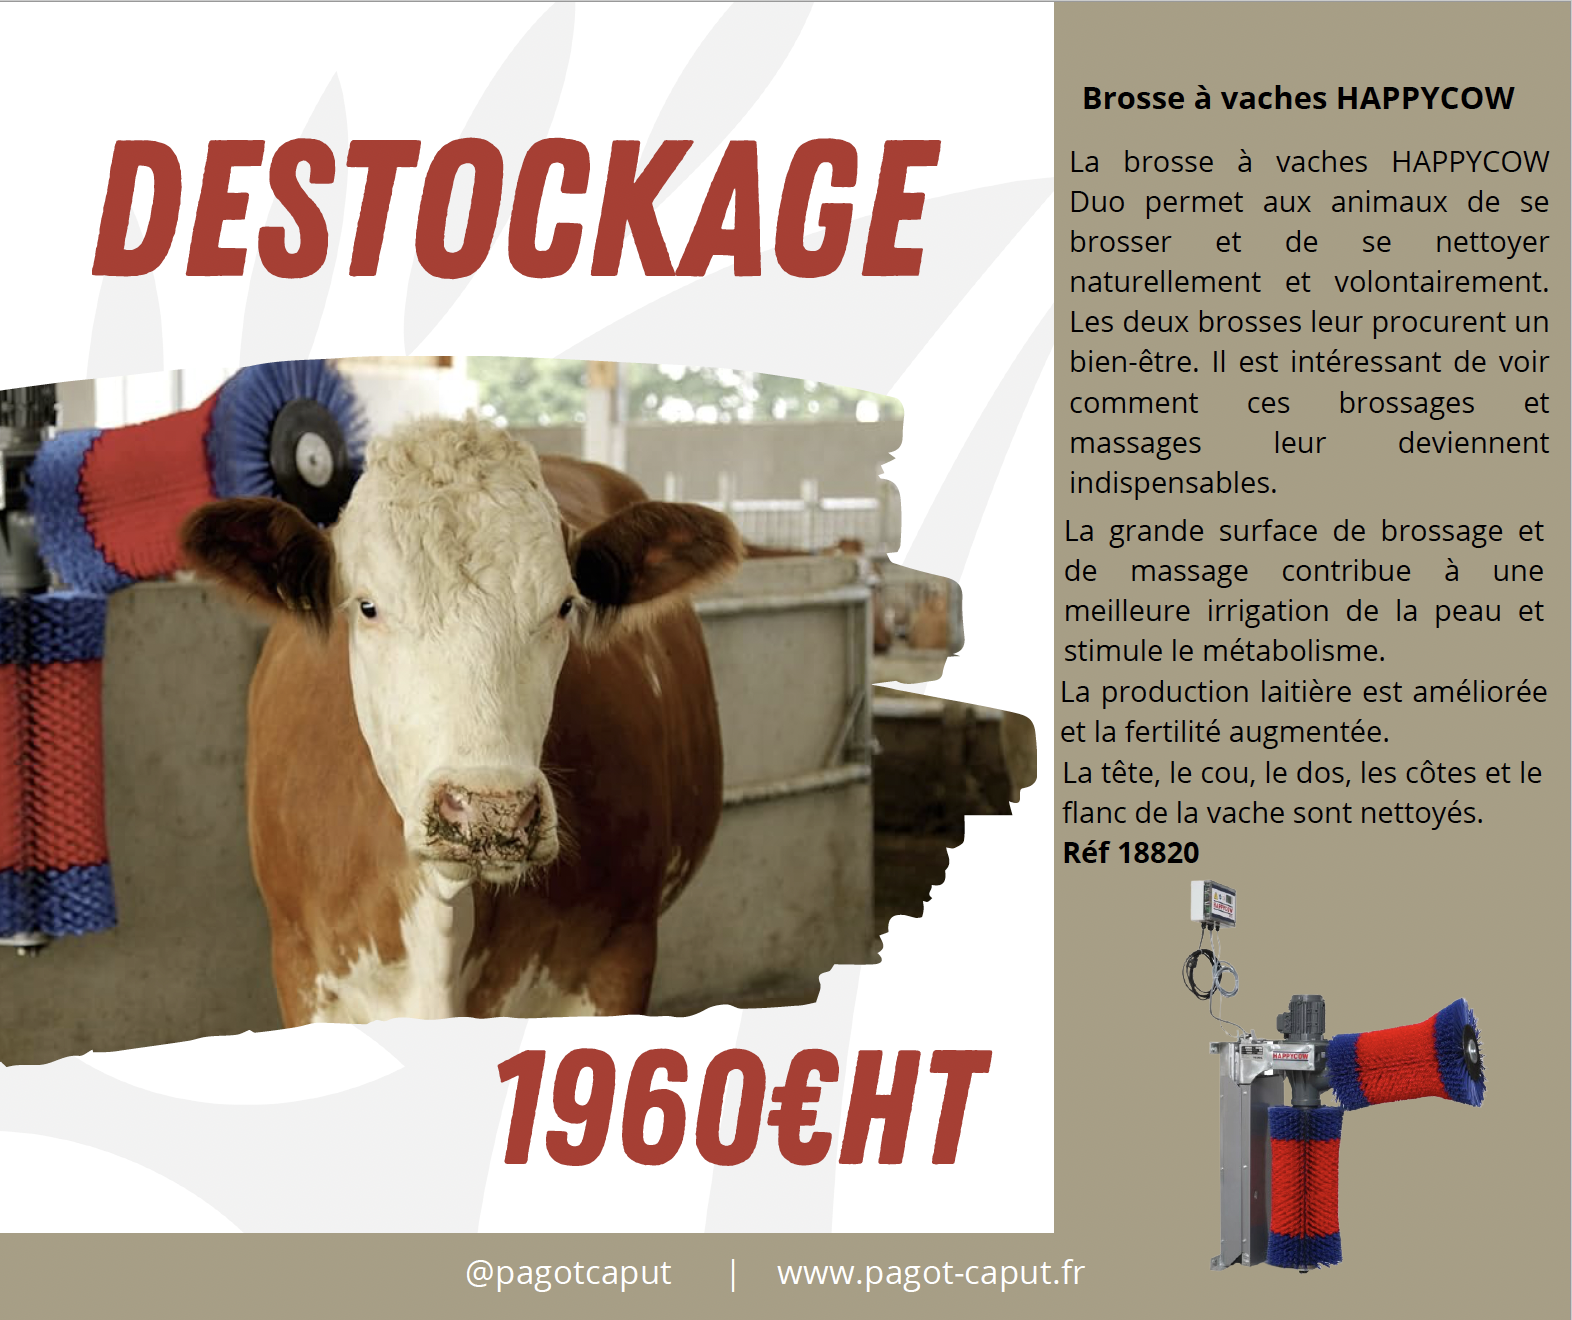 Destockage Brosse à Vaches HAPPYCOW